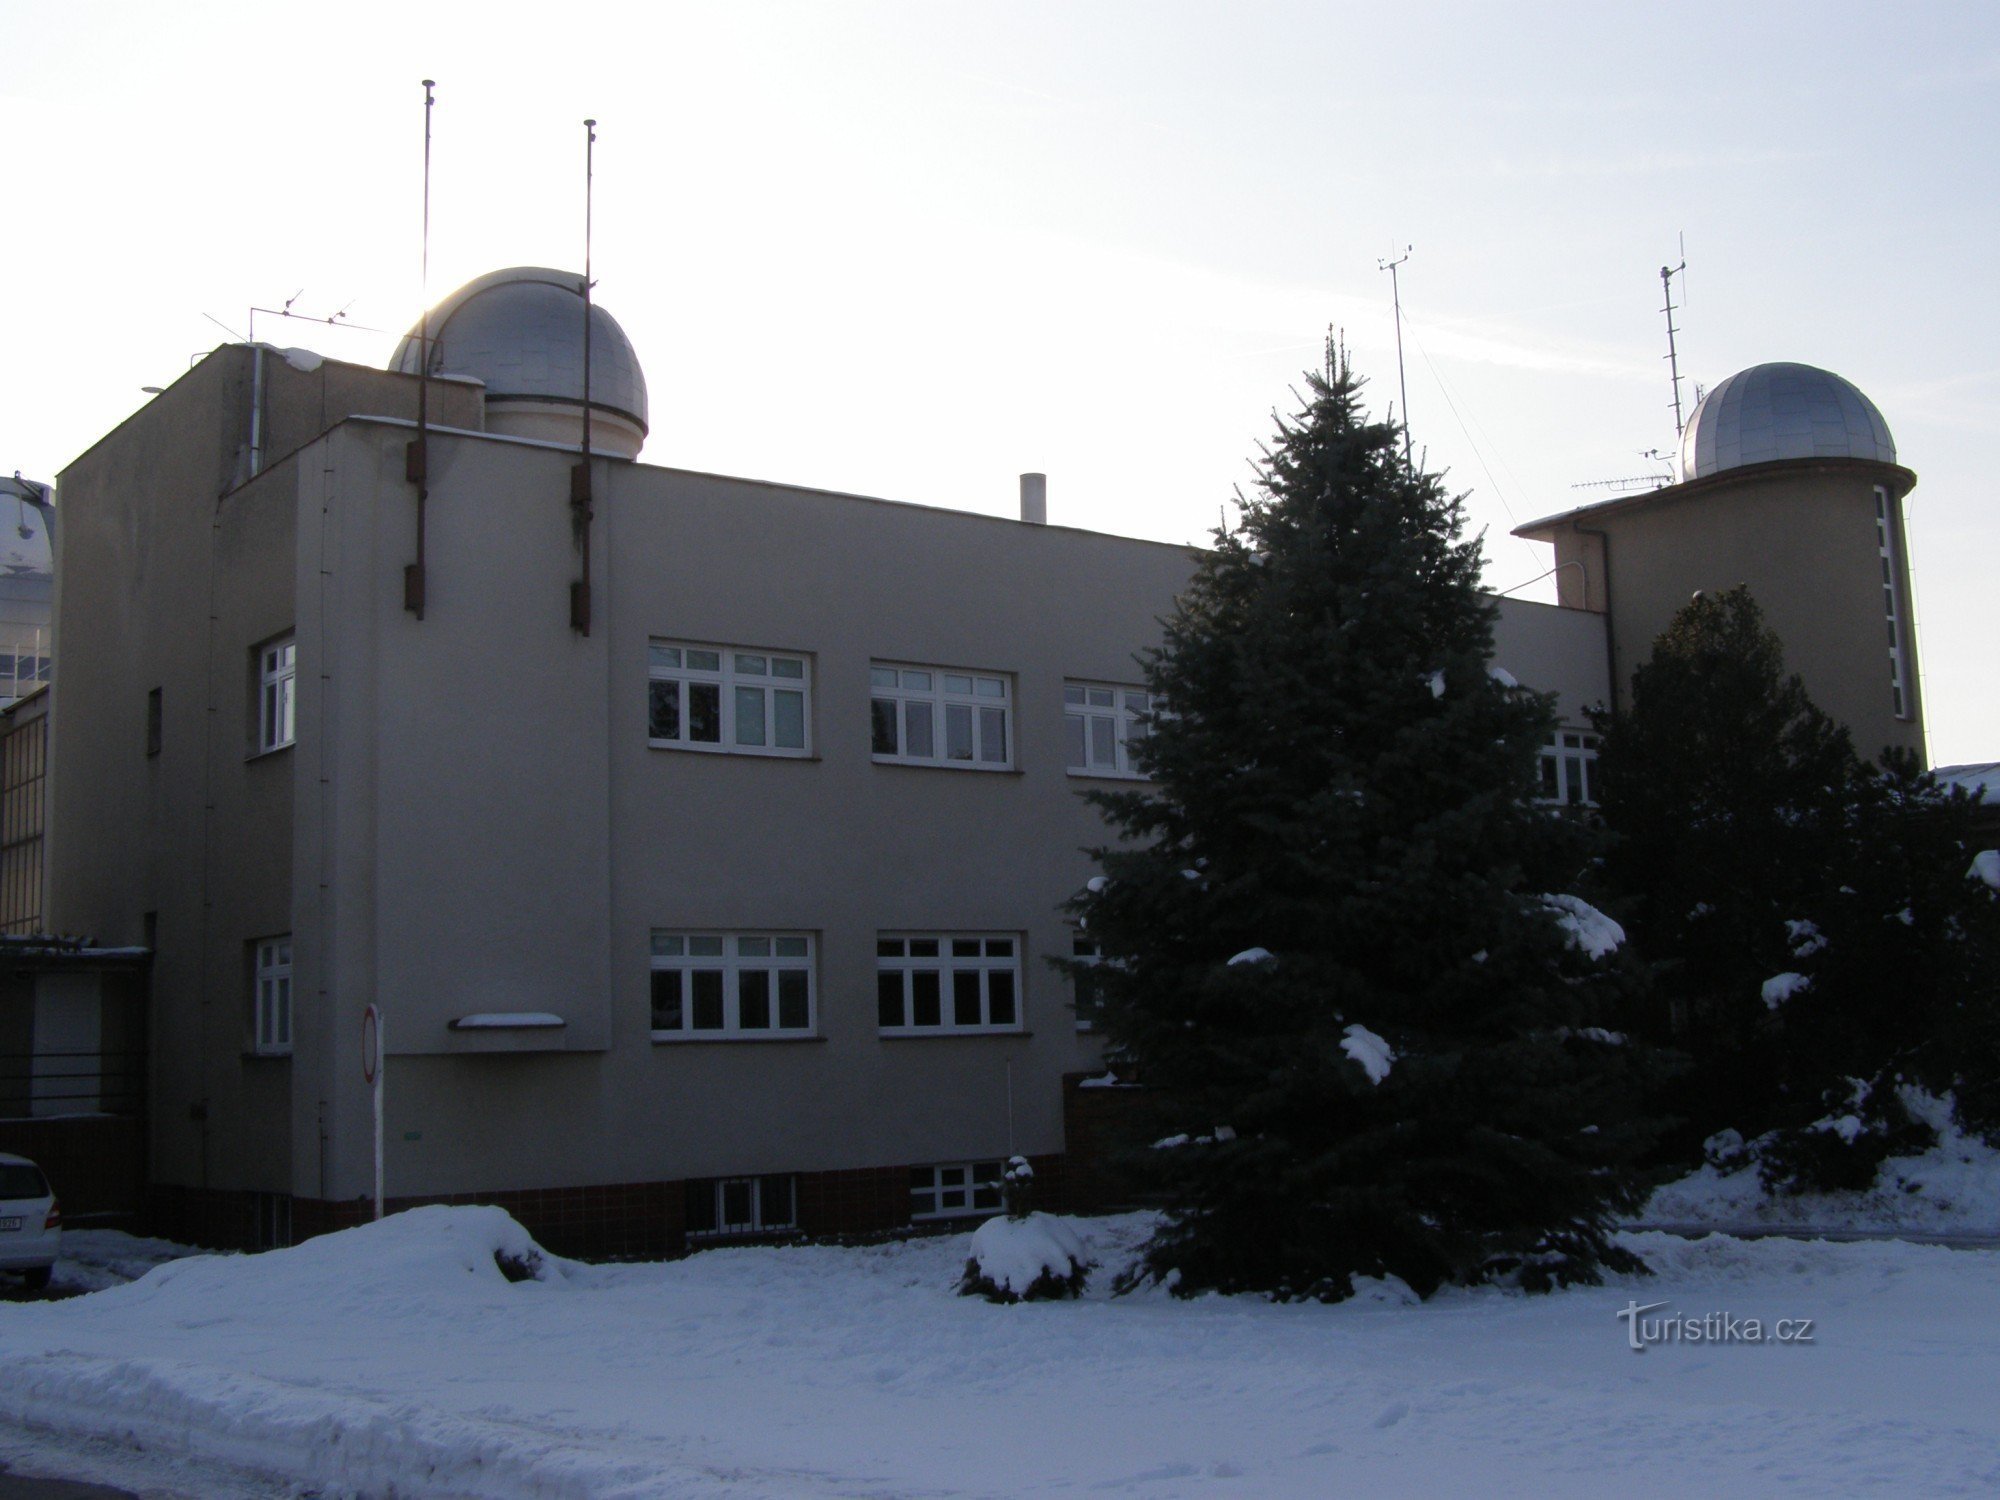 Hradec Králové - csillagvizsgáló és planetárium